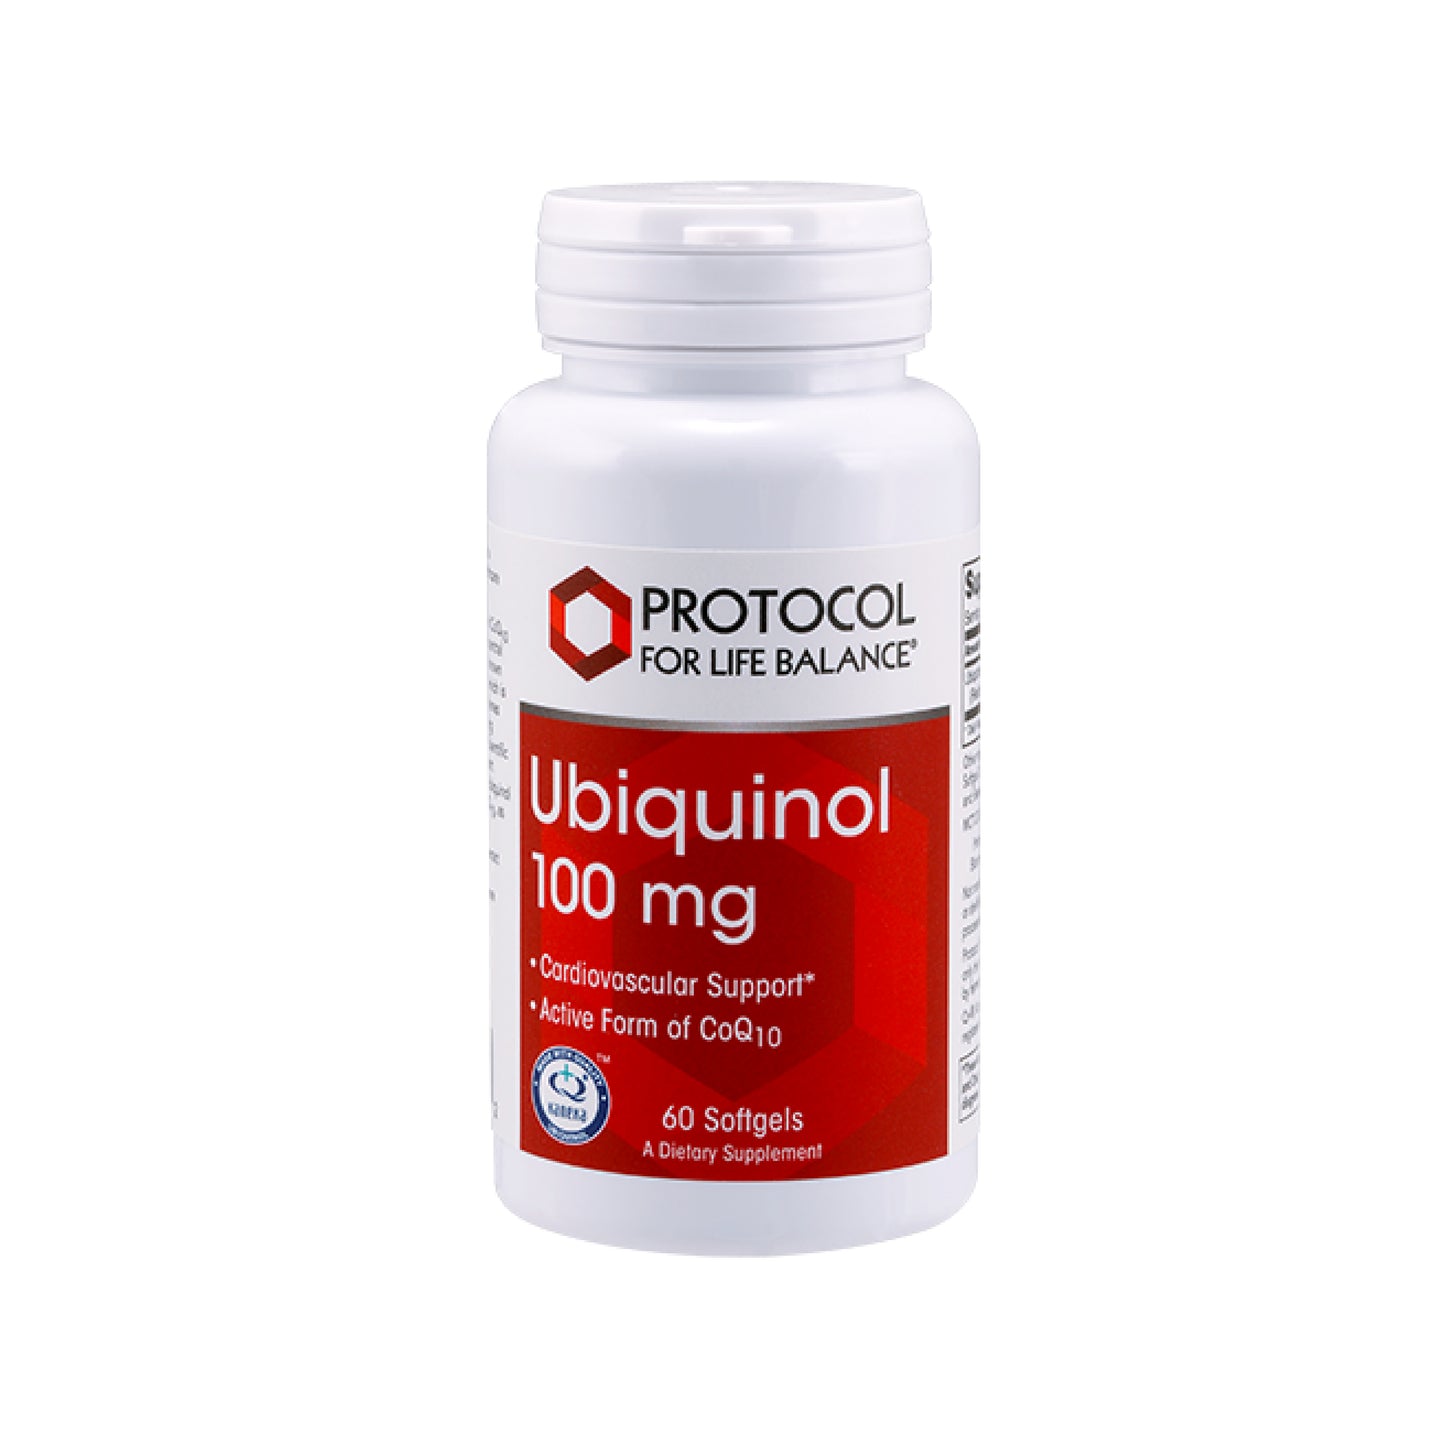 Protocol for Life Balance, Ubiquinol, 100 mg, 60 Softgels